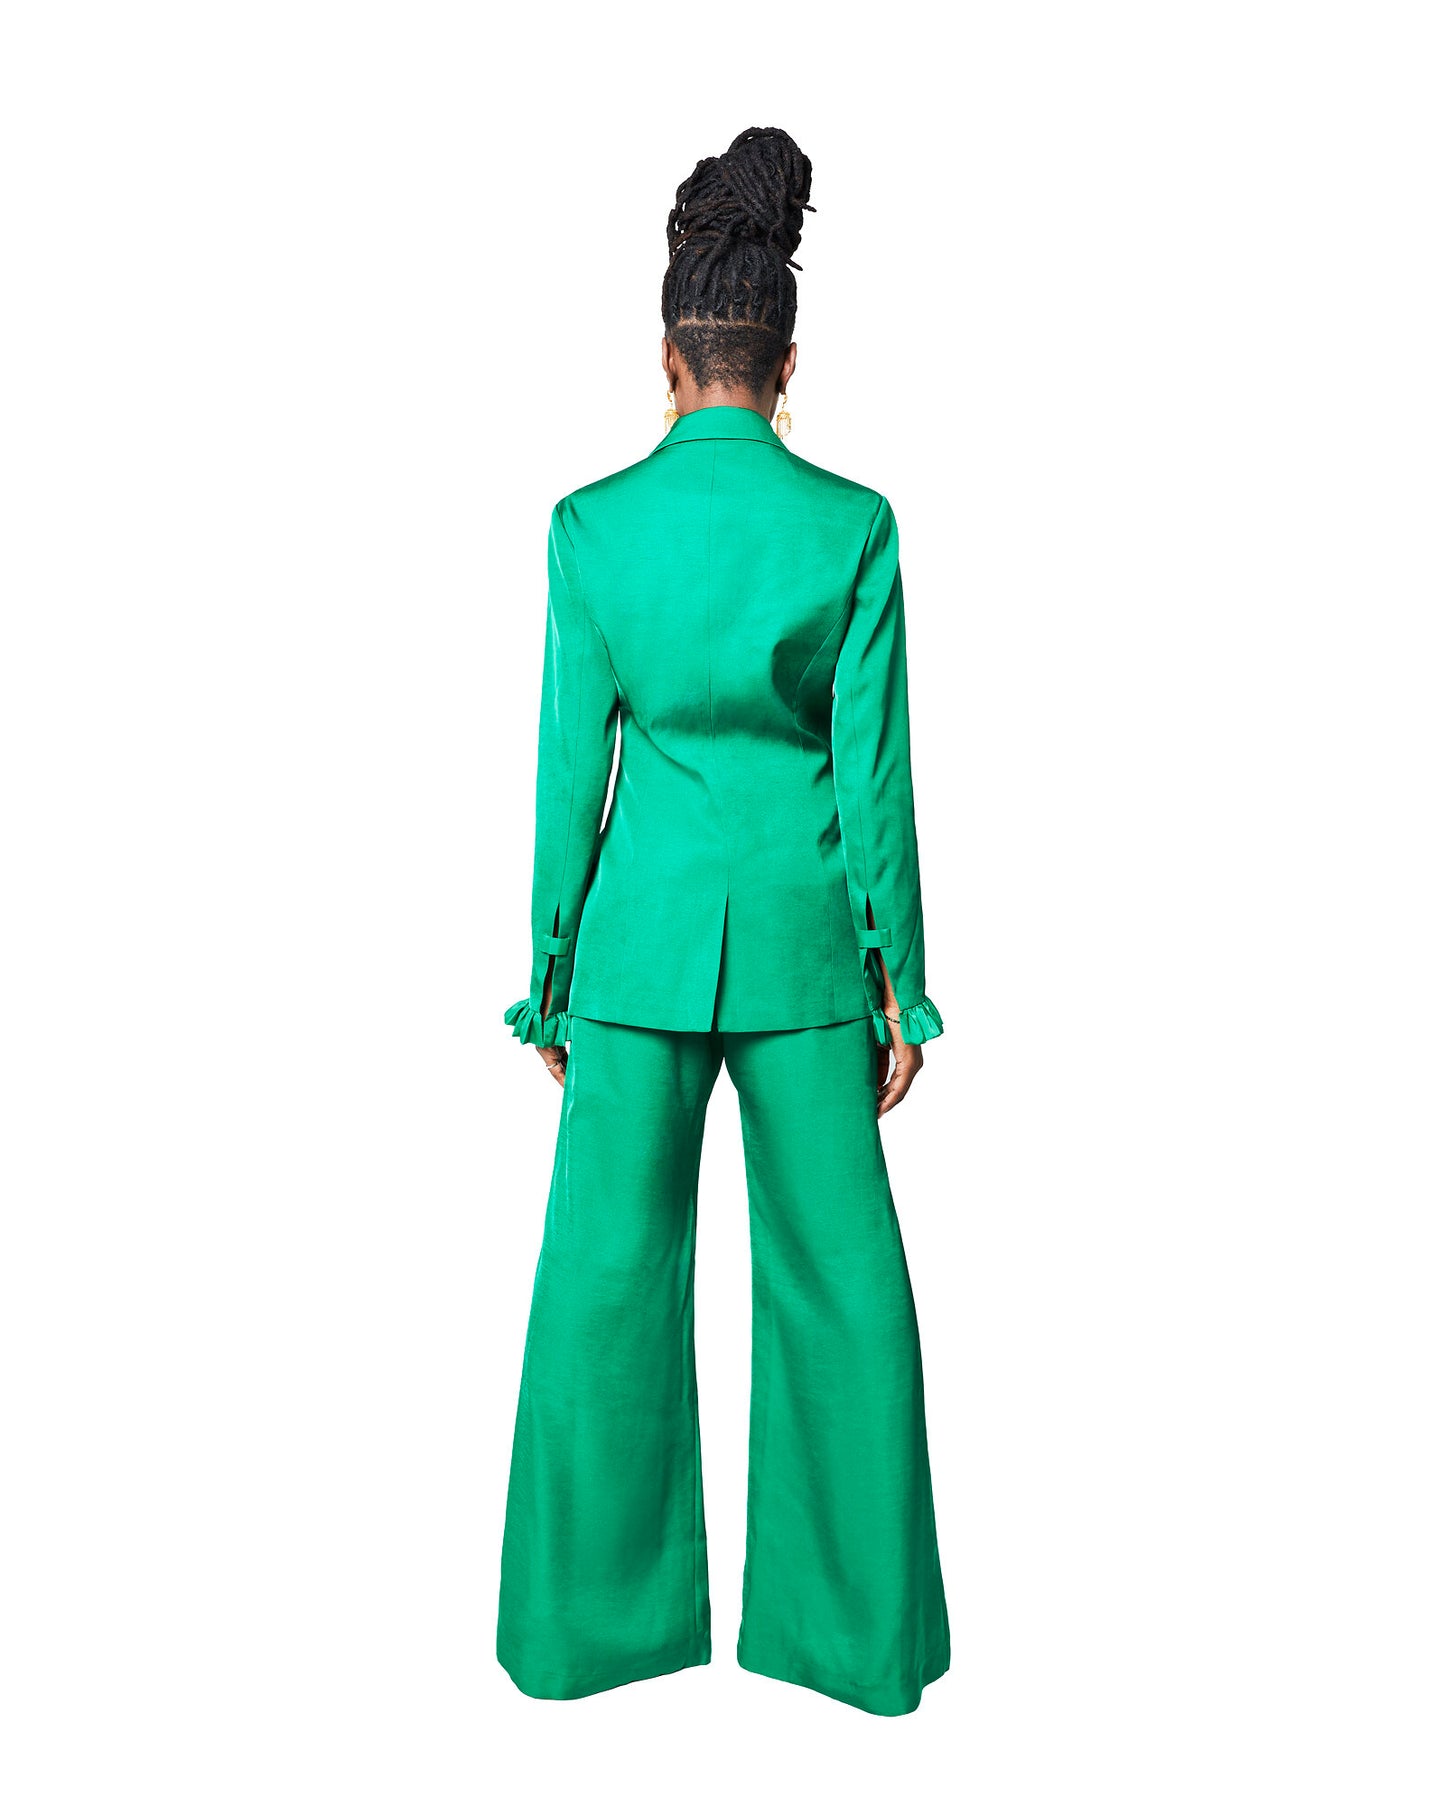 Emerald City Suit